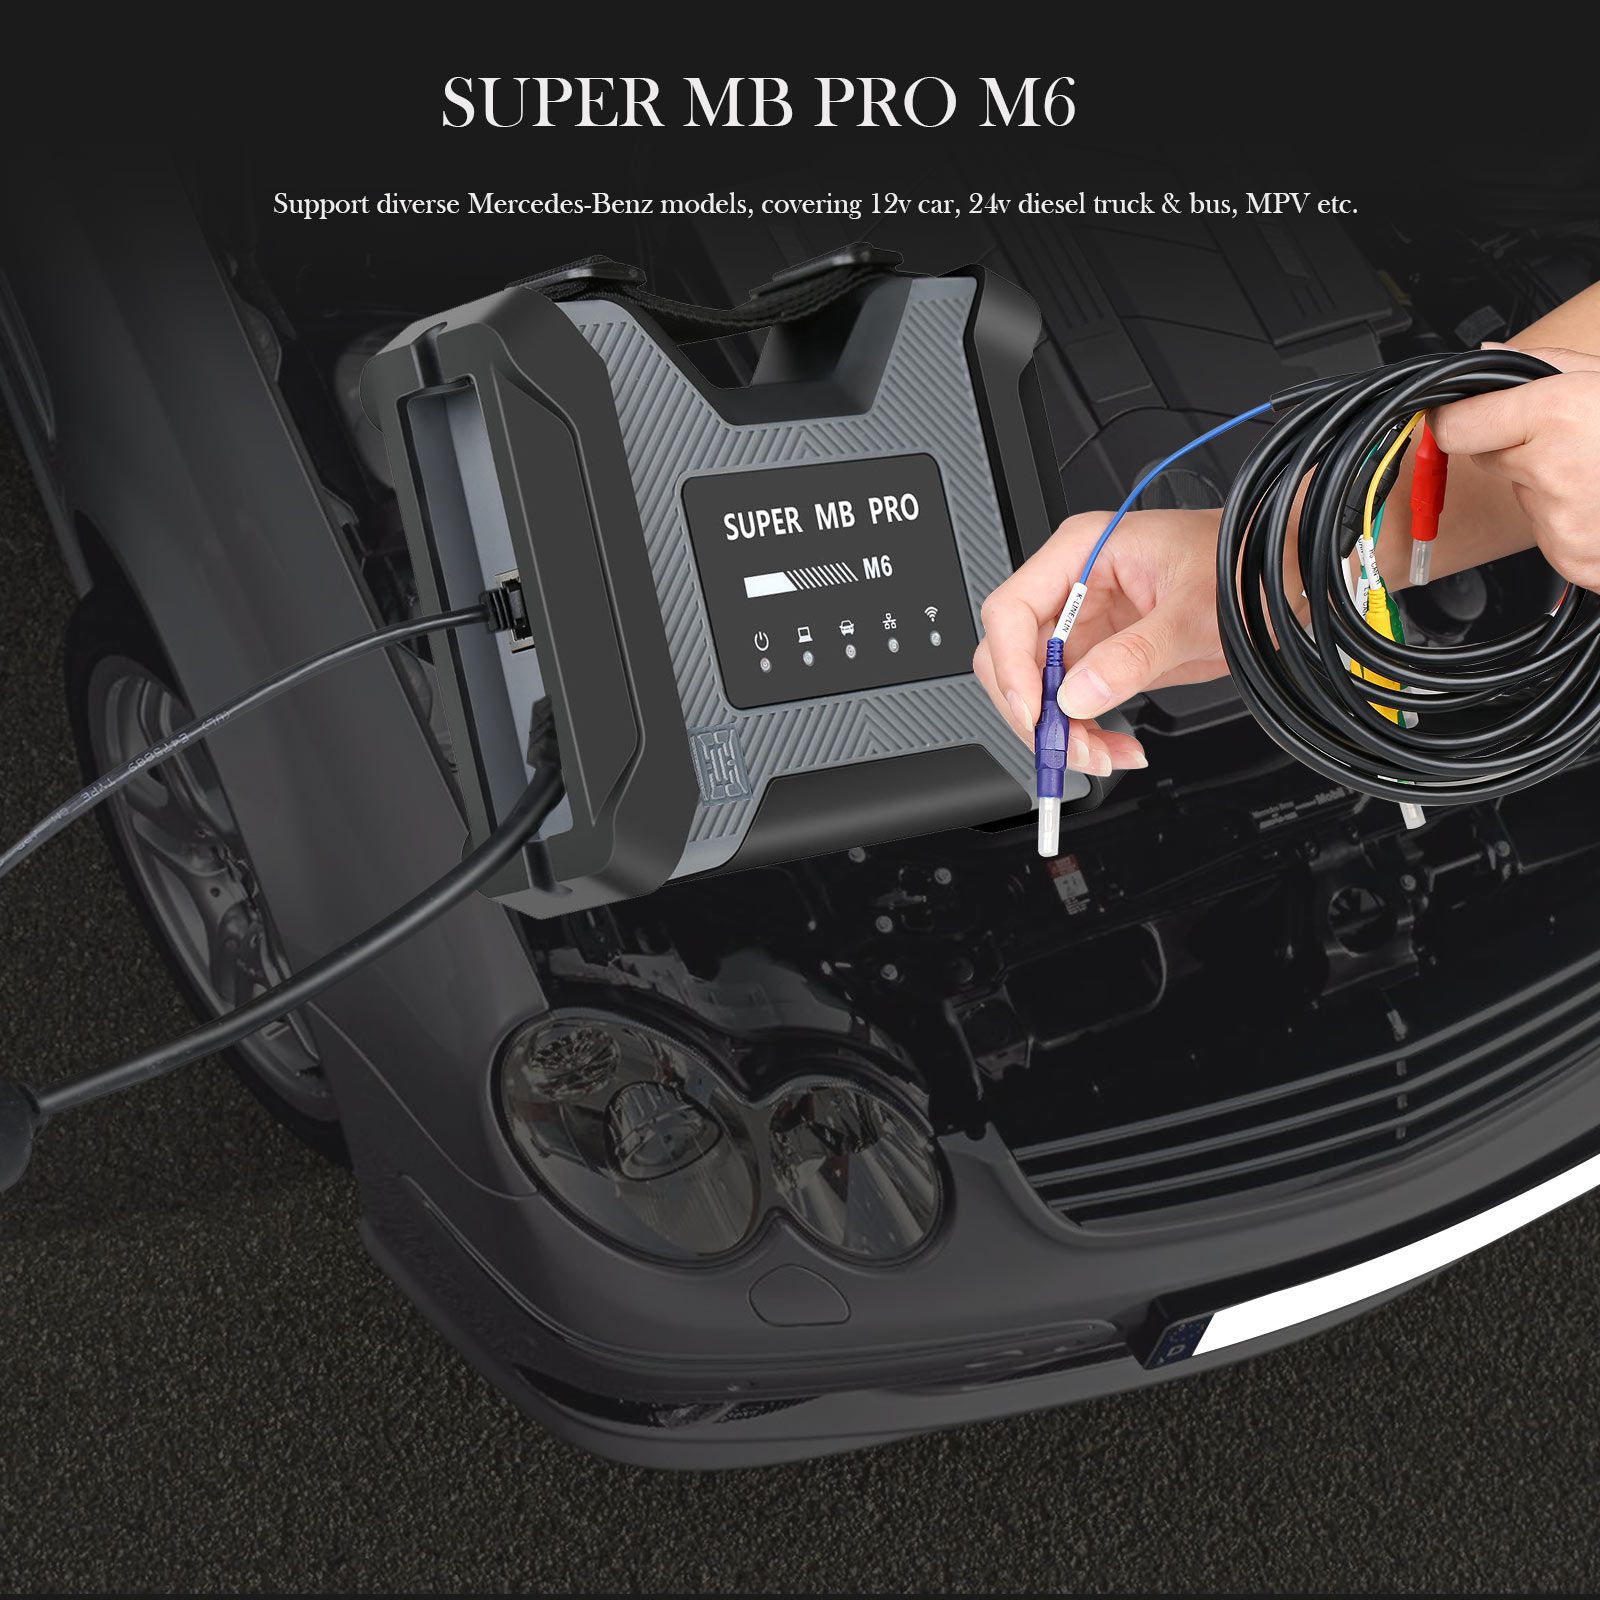 Outil de diagnostic sans fil super MB pro M6 + câble OBD2 16 broches + câble Lan + câble 14 broches pour Benz Truck diagnostic